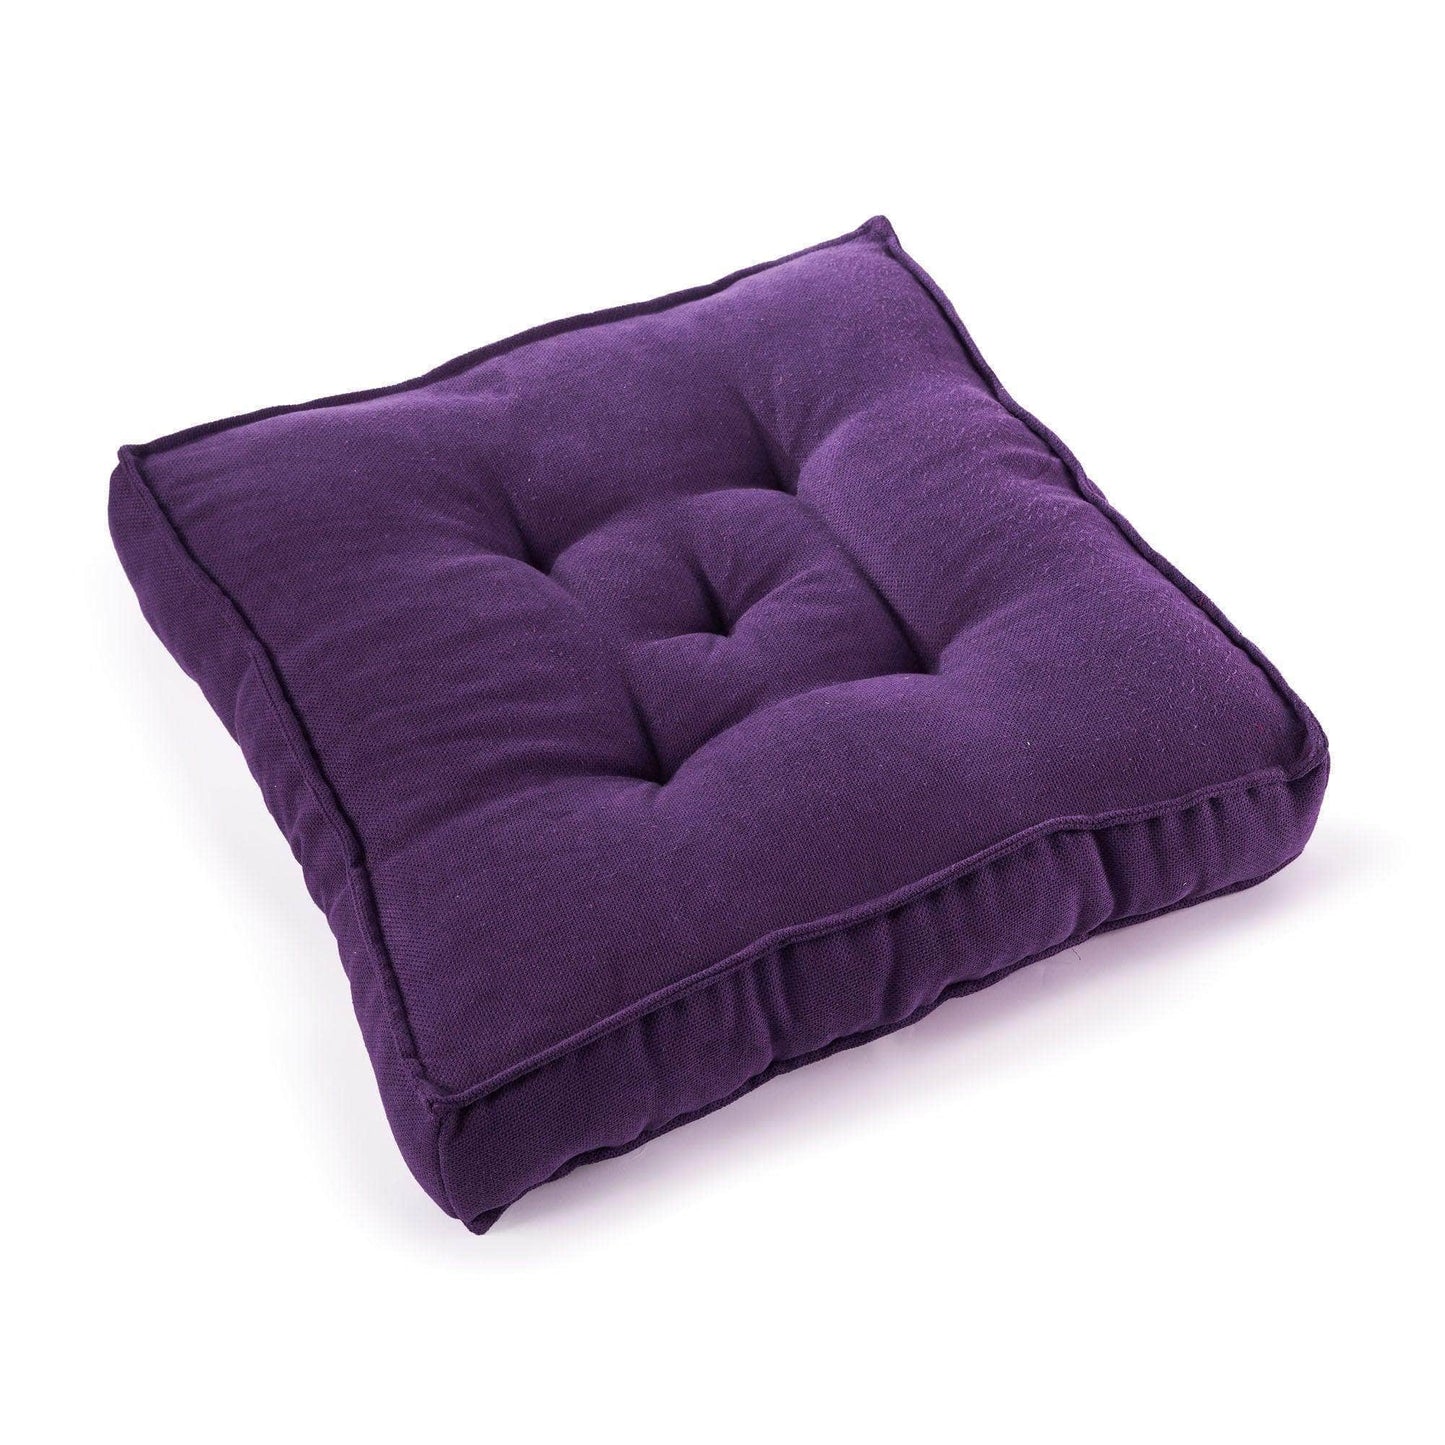 Penguin Group Cushions Mauve Cotton Square Cushion 50×50×10 cm